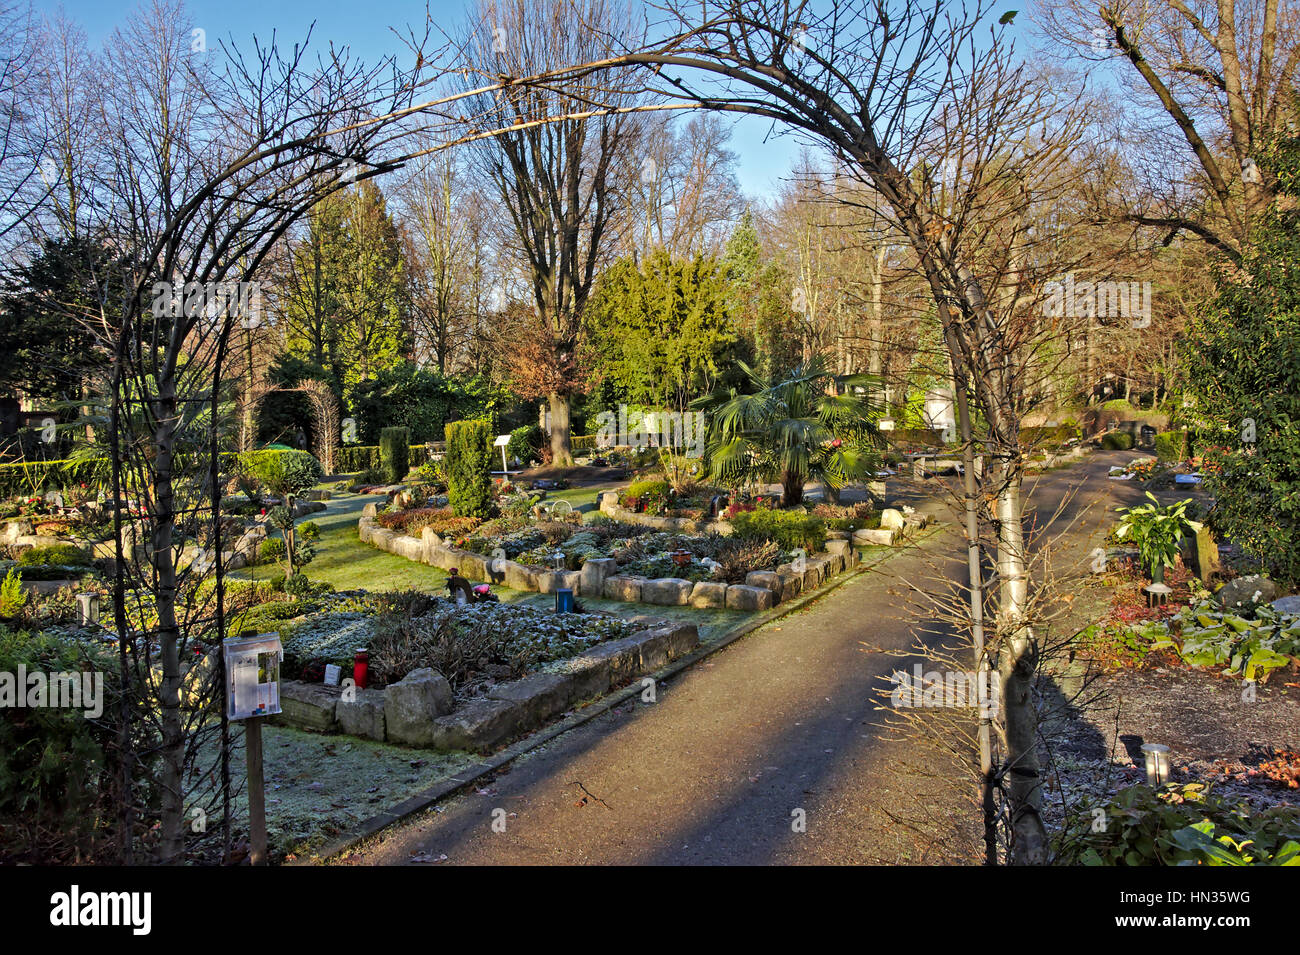 Funeral verde jardín con tumbas y urnas cinerarias en 'MelatenFriedhof cementerio de Colonia. Foto de stock